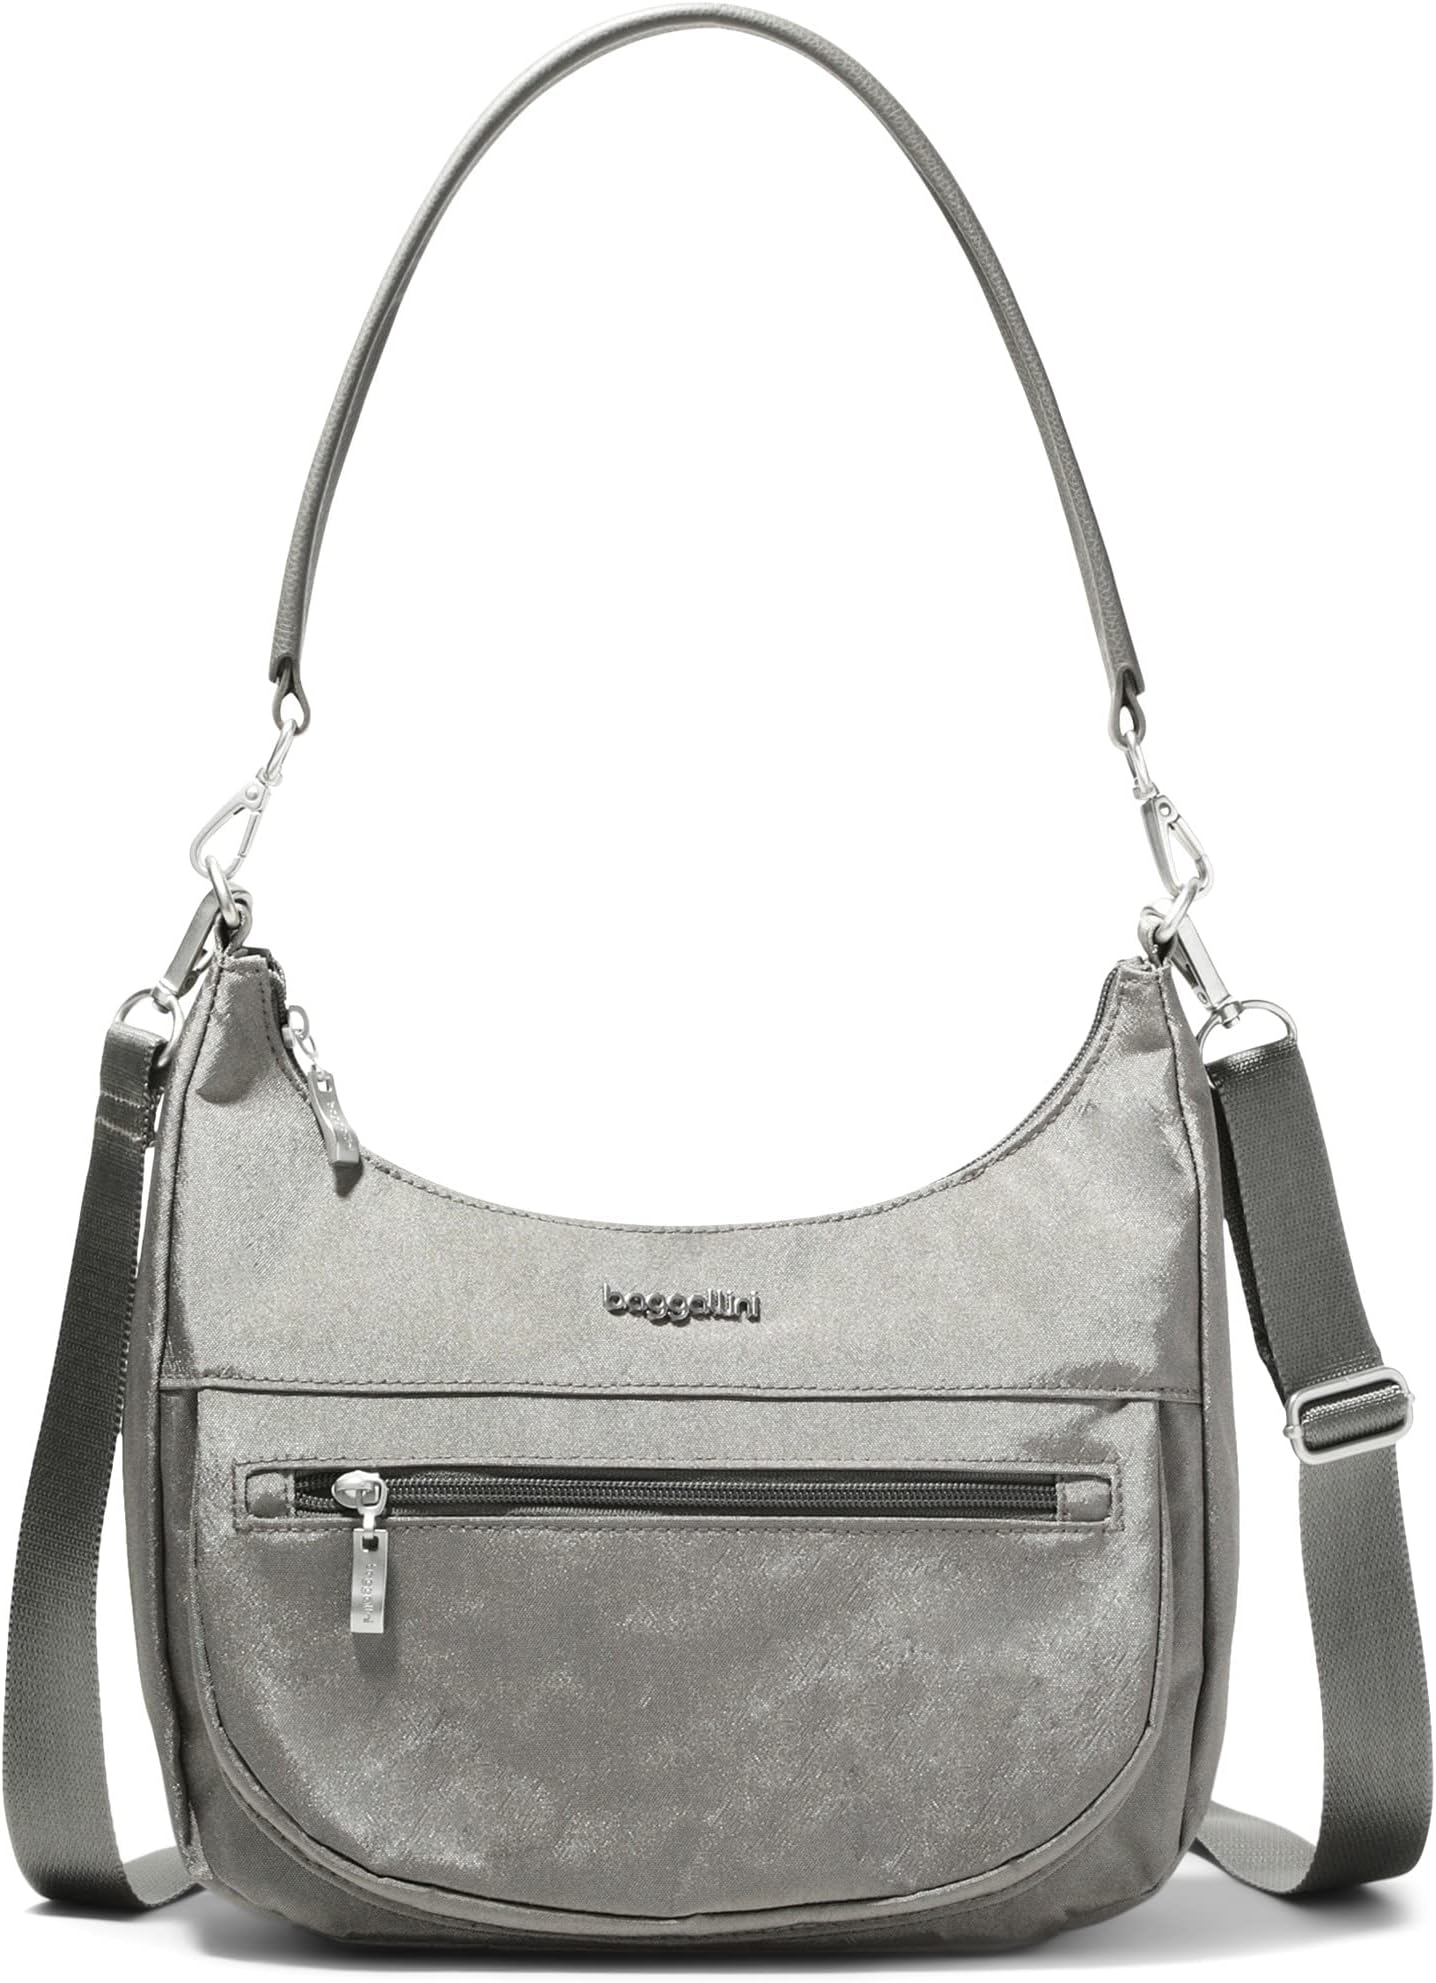 Современная карманная сумка в форме полумесяца Baggallini, цвет Sterling Shimmer